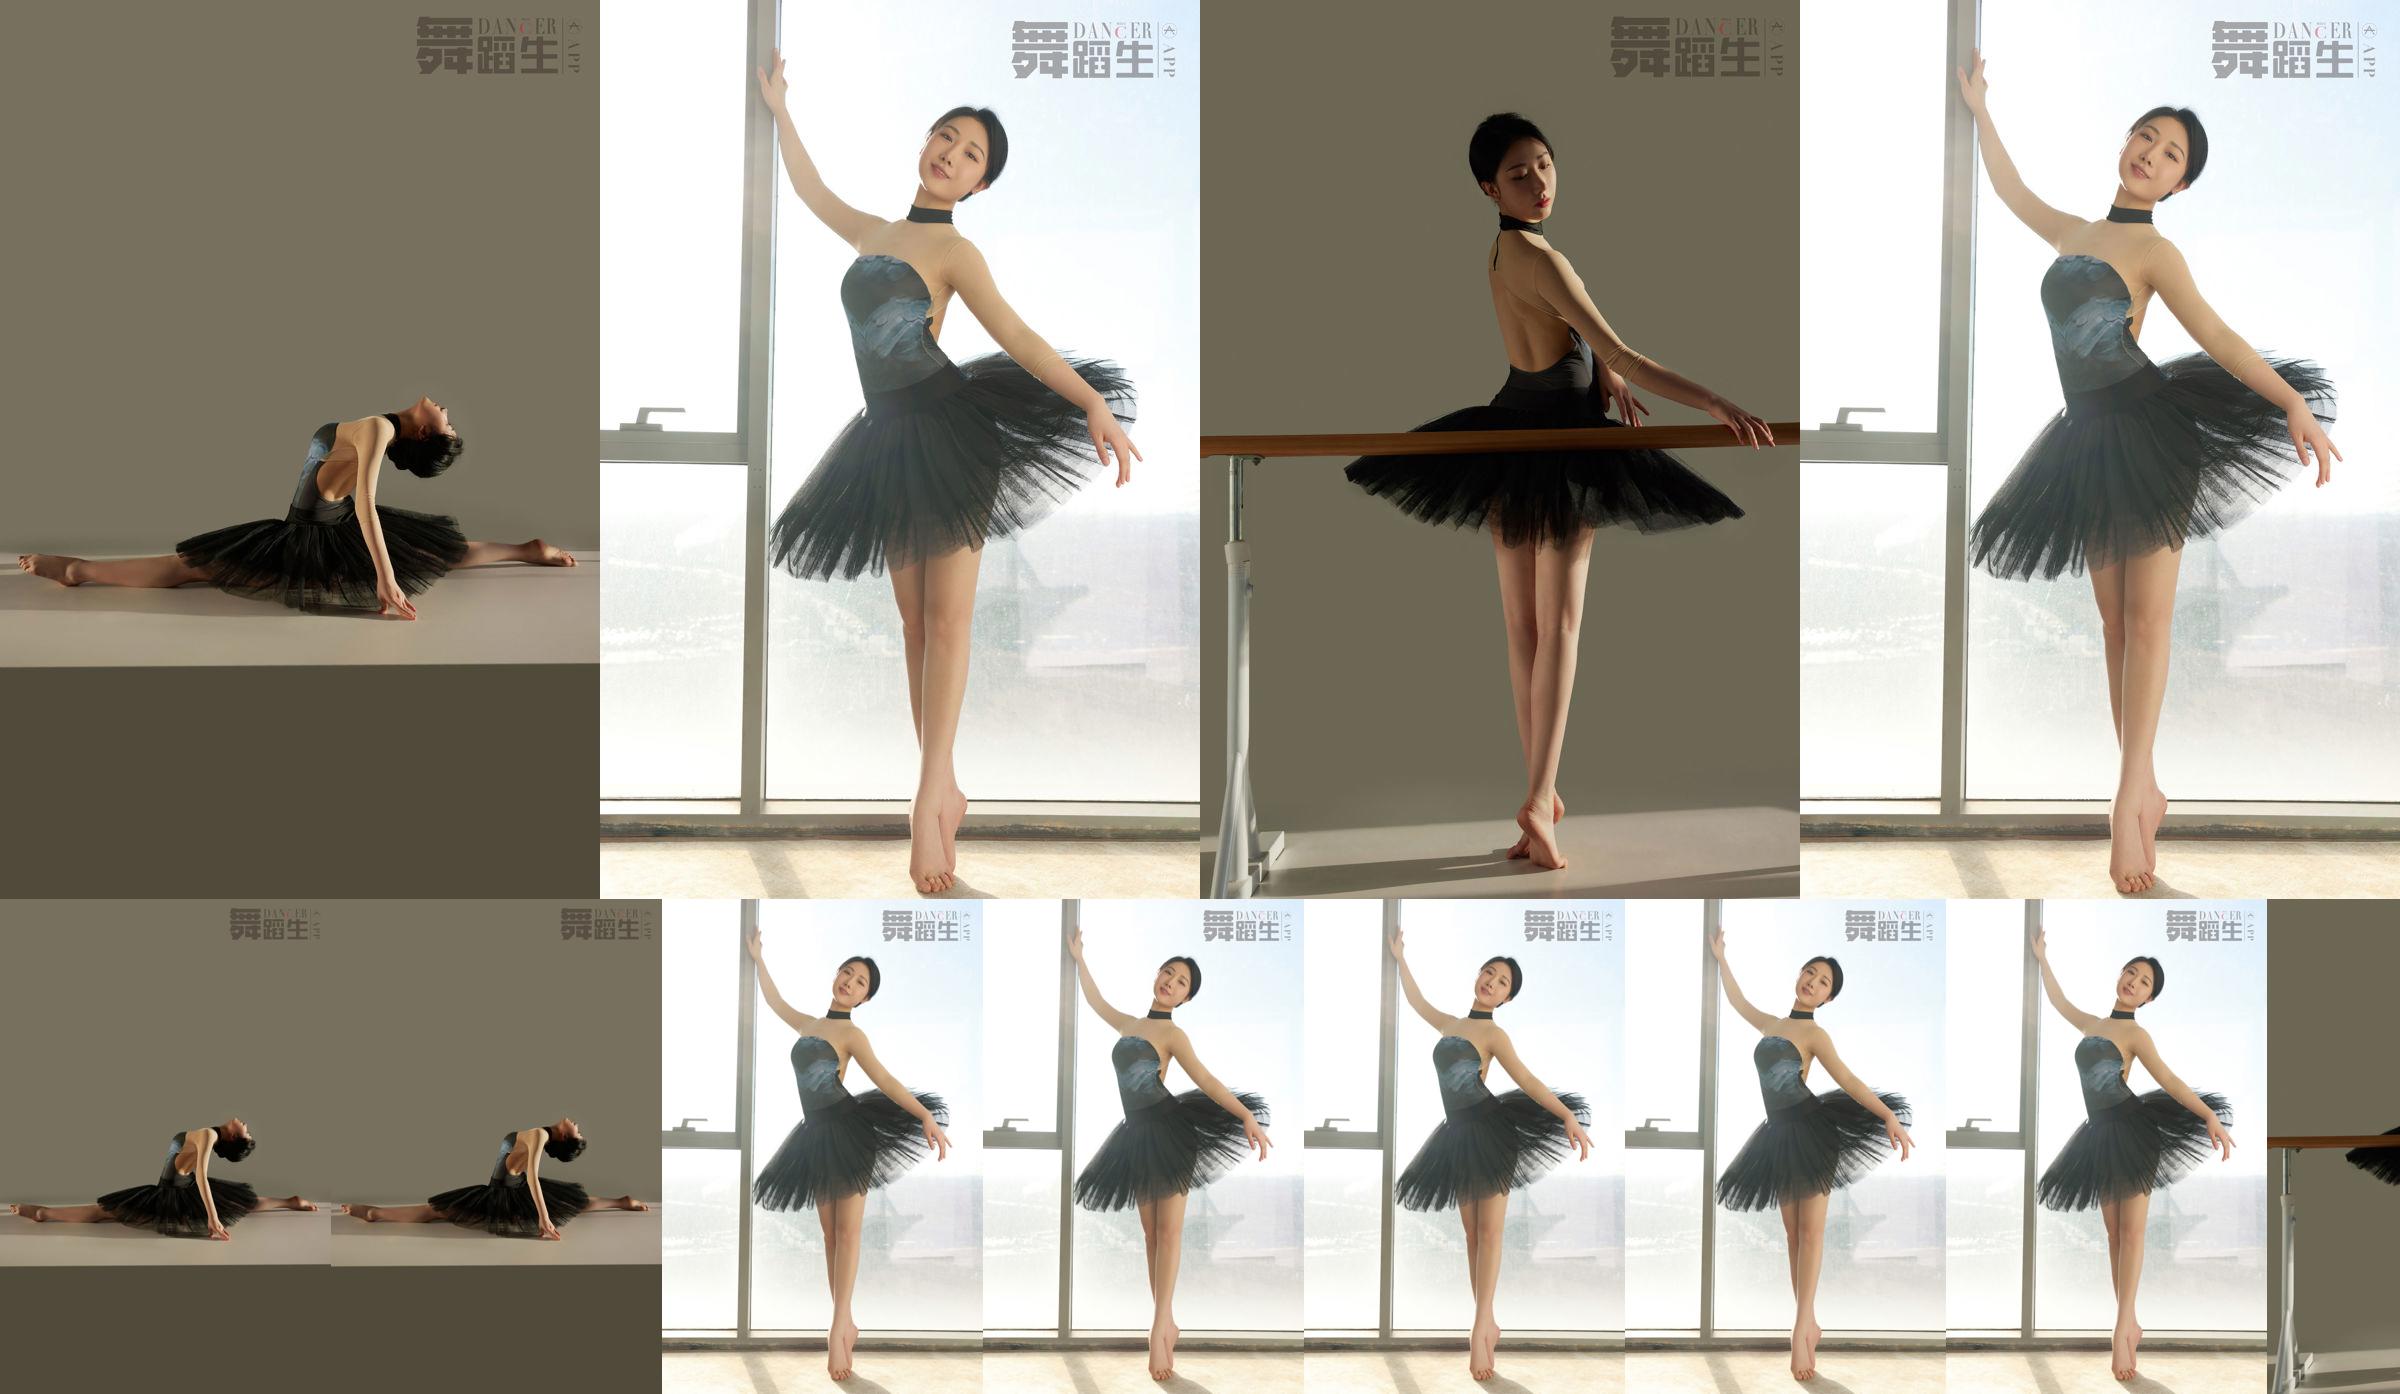 [Carrie Galli] Diario de un estudiante de danza 088 Xue Hui No.1f994f Página 1